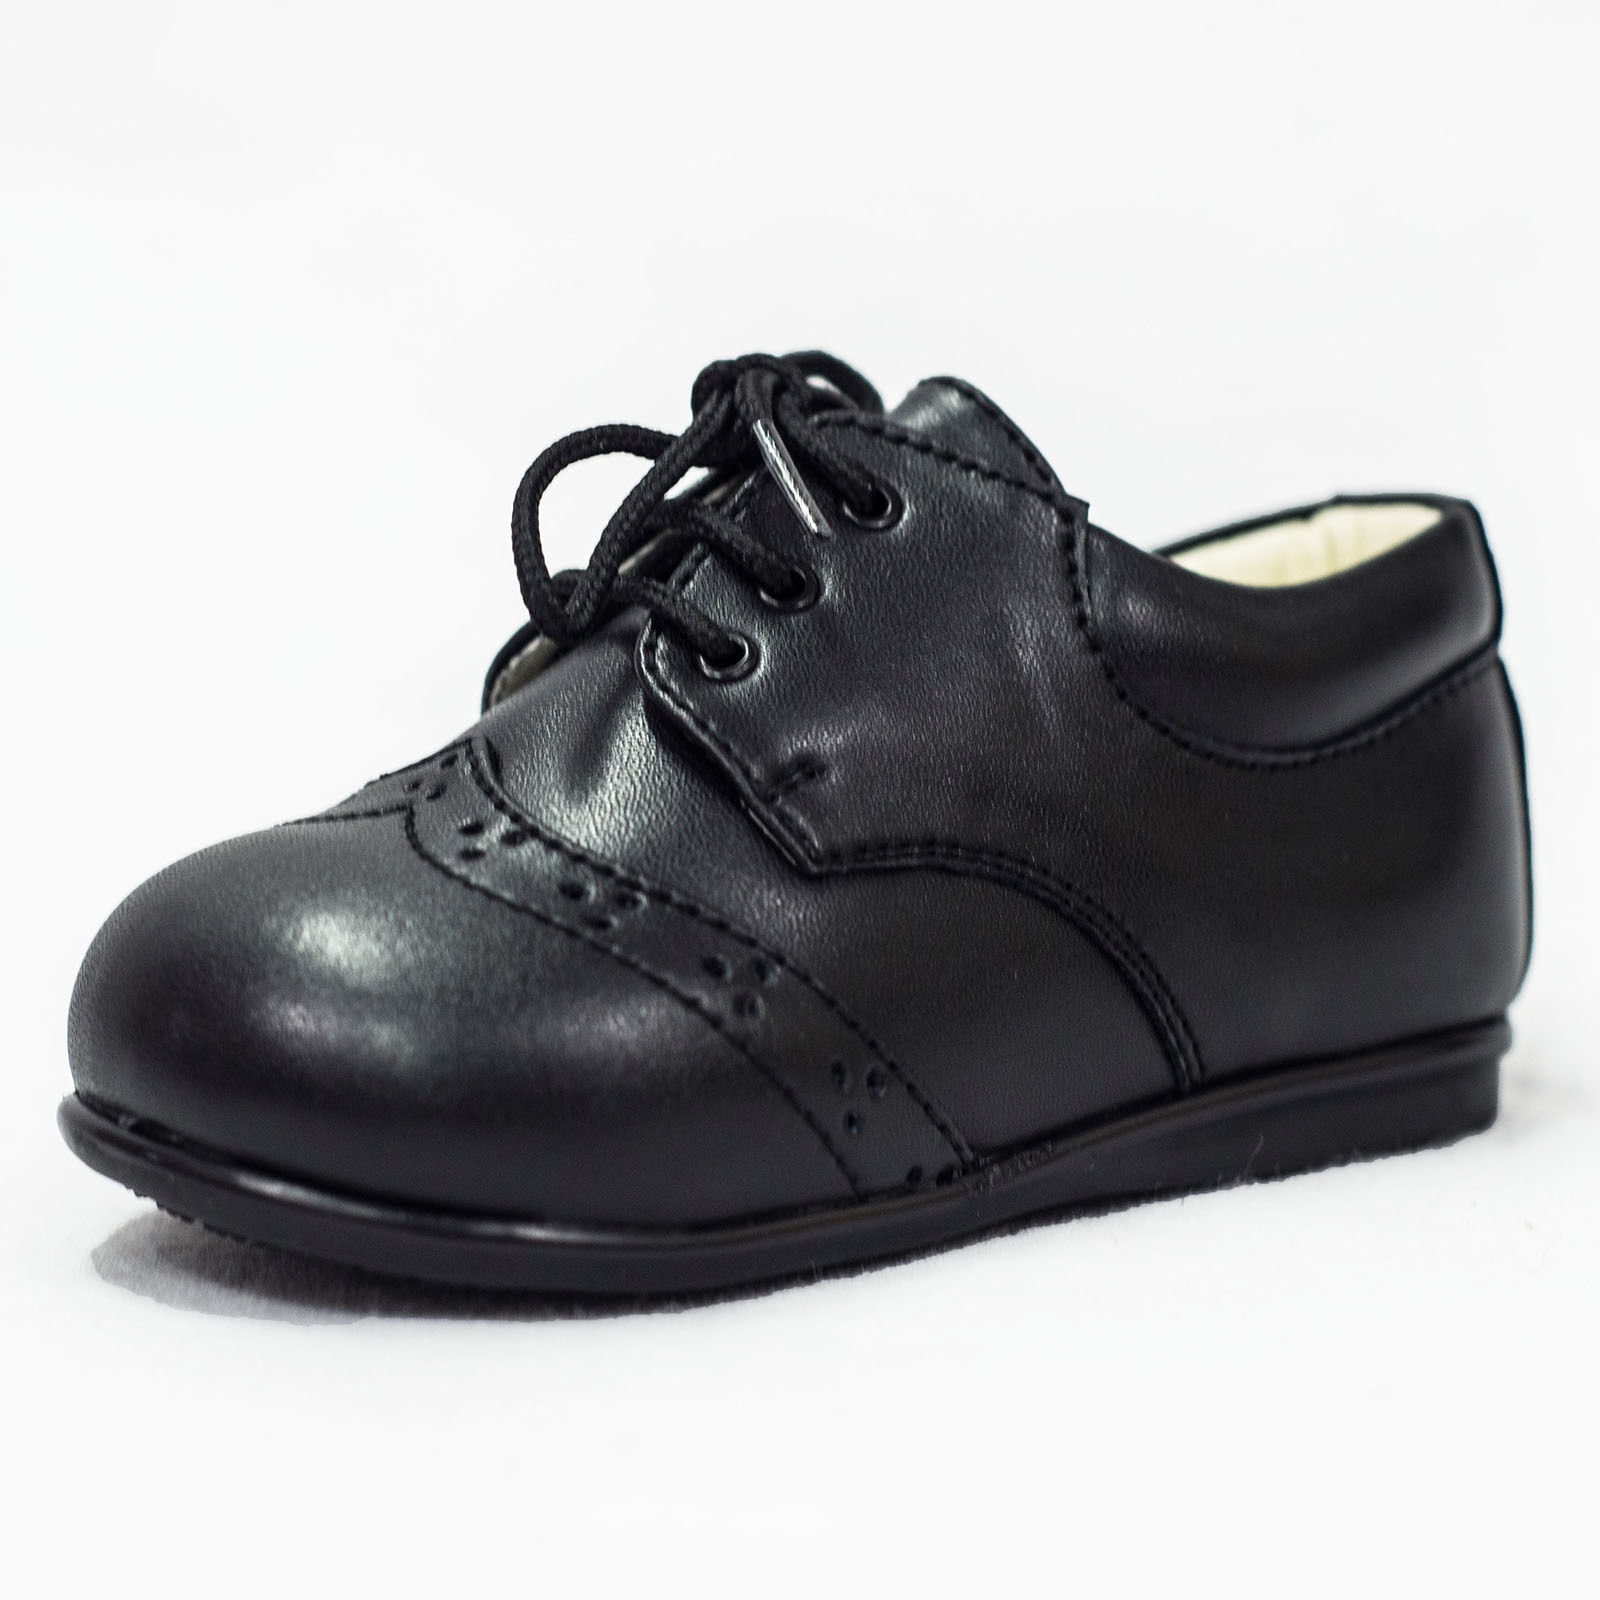 Otto børnefestko, sort - flotte pæne klassiske sko til drenge i sort snørre